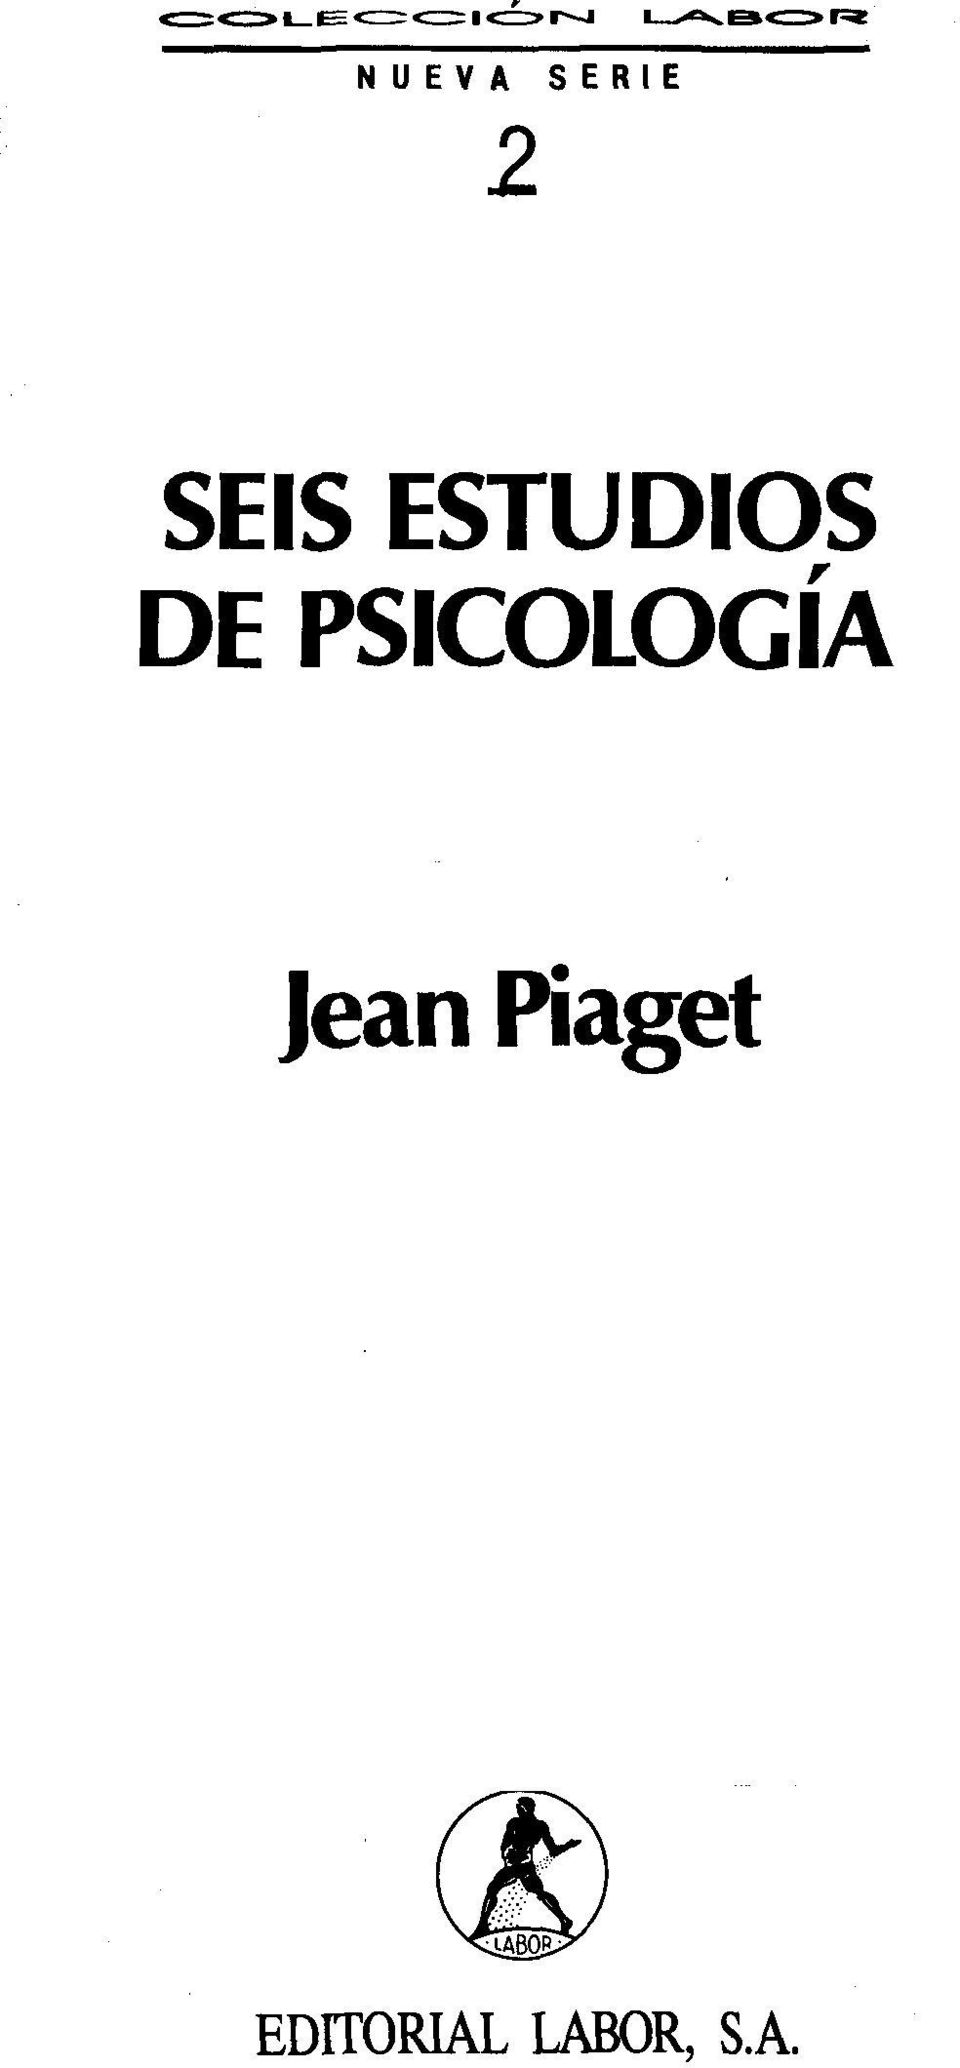 PSICOLOGÍA Jean